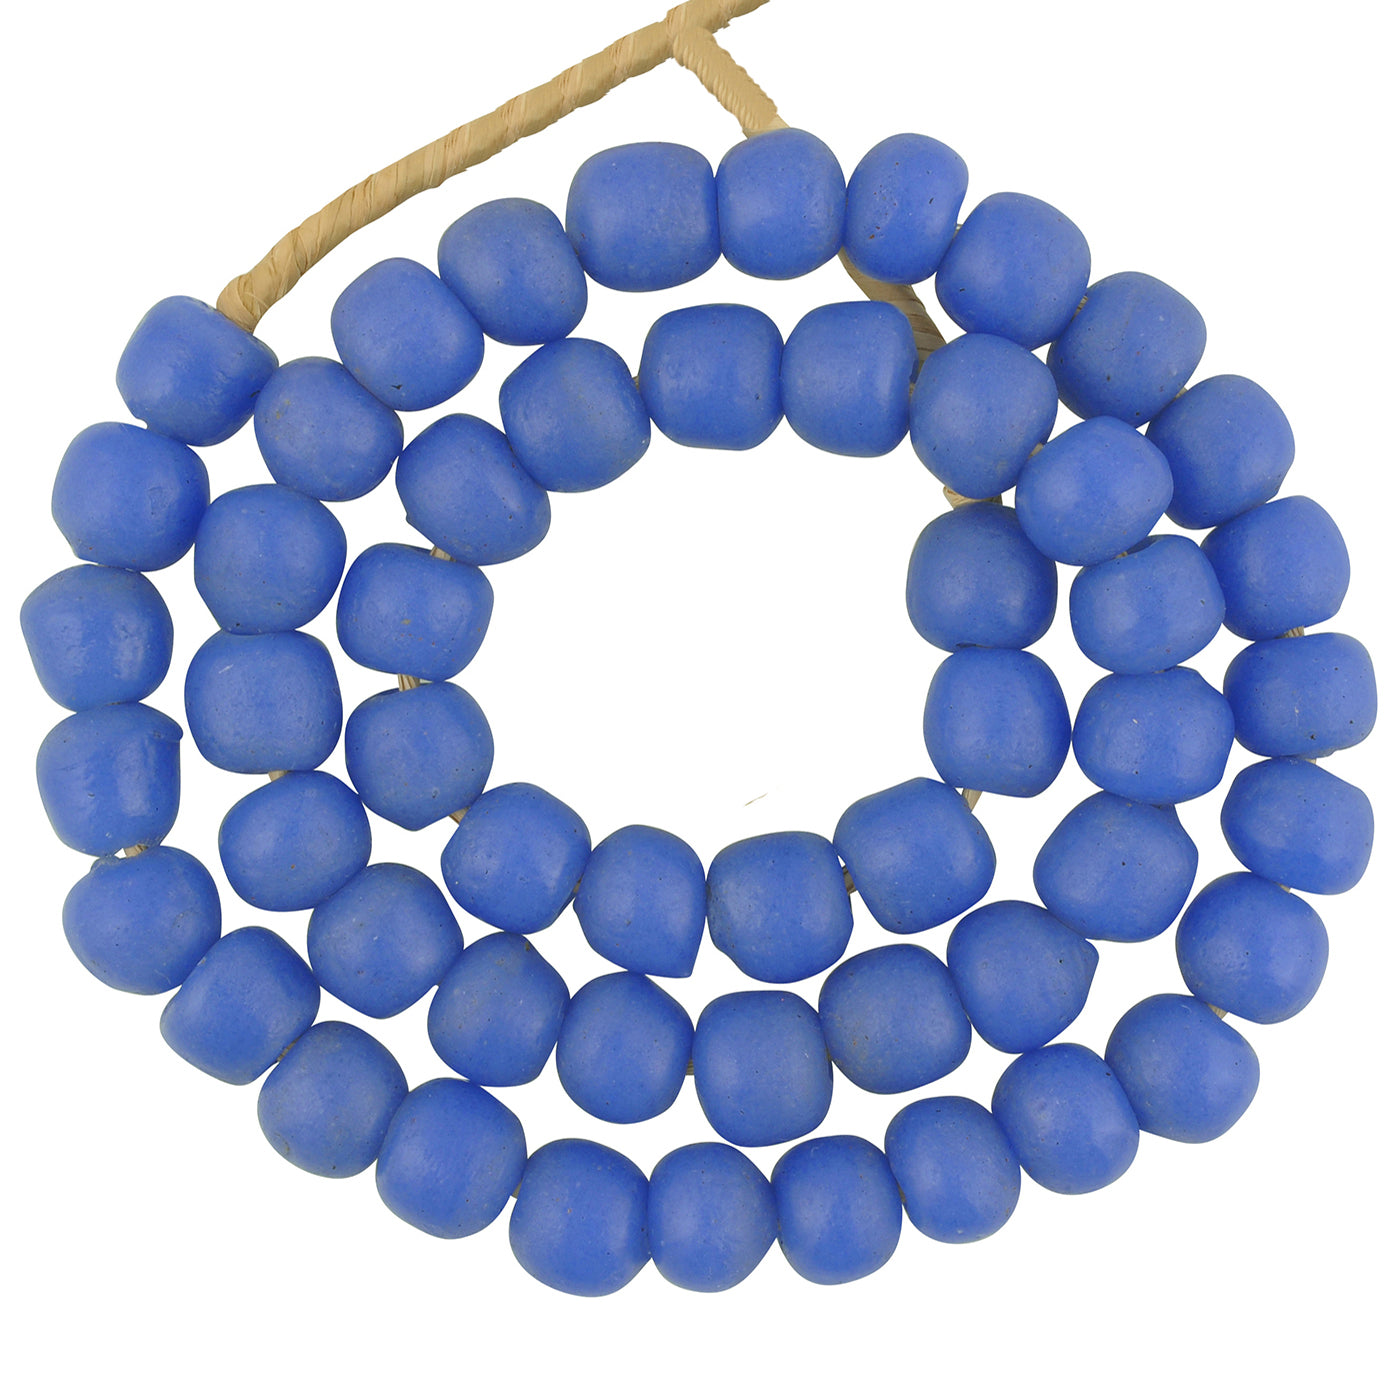 Krobo perles verre poudre recyclé collier ethnique tribal africain fait main